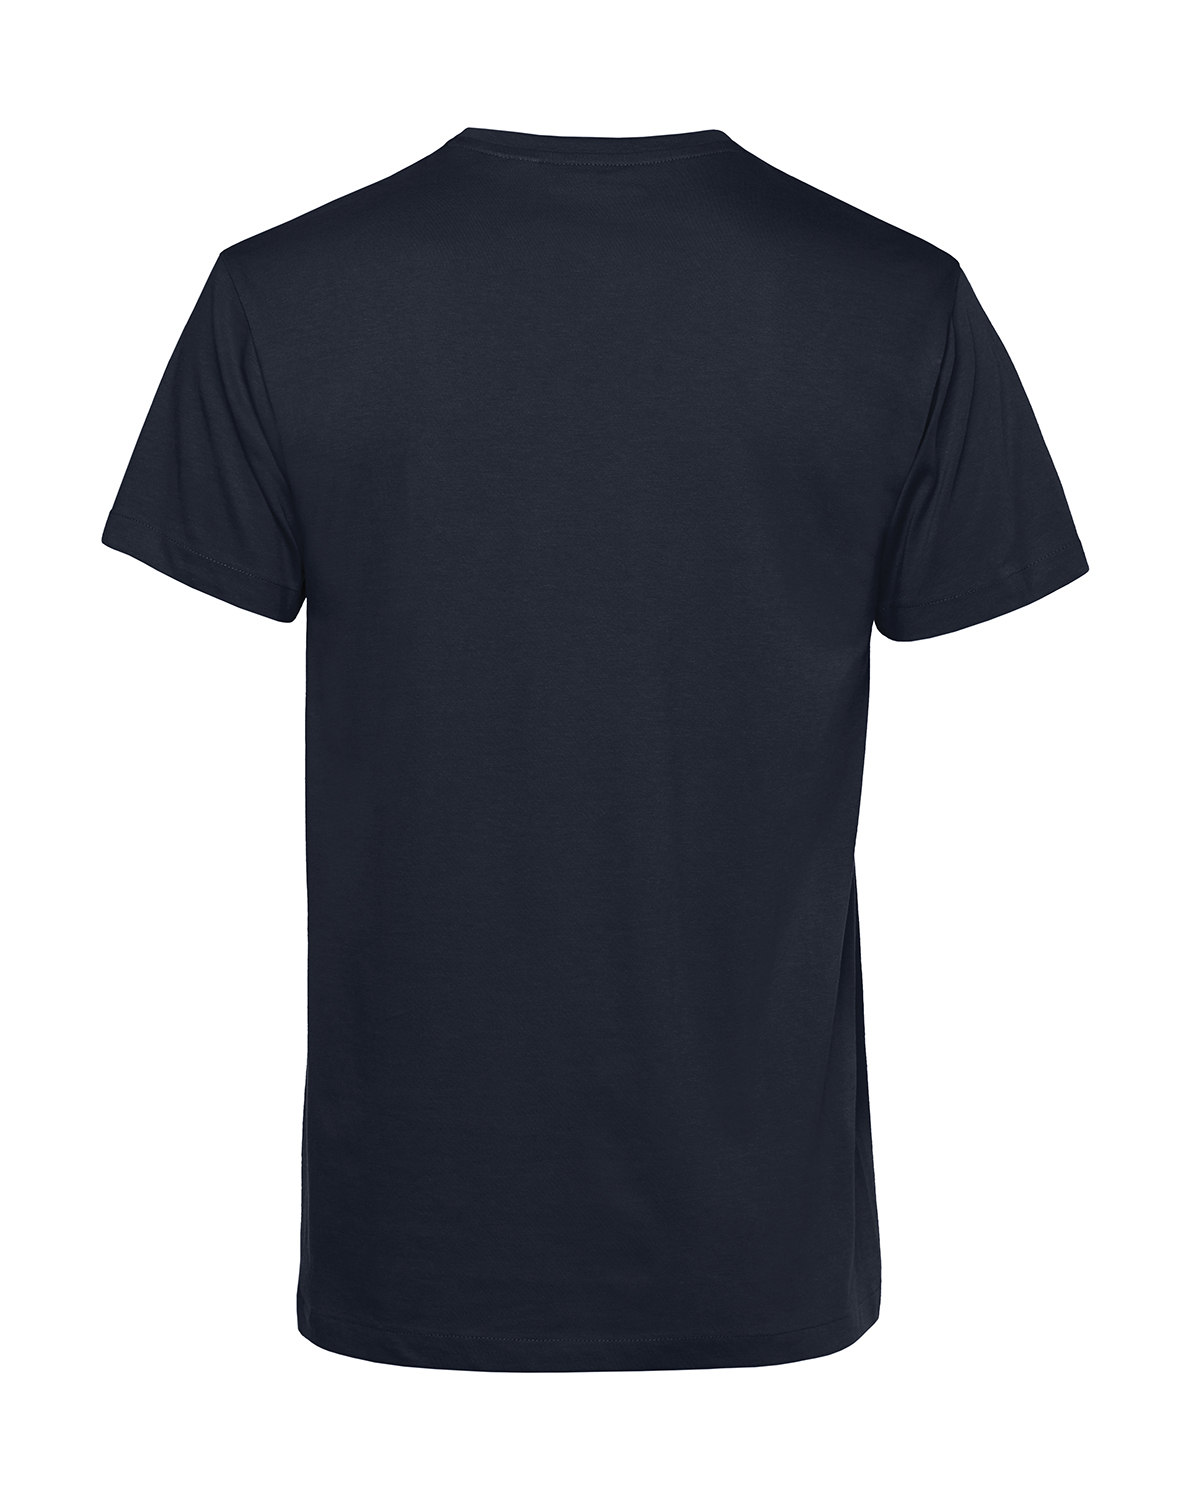 Nachhaltiges T-Shirt Herren 2Takt - Wenn Du keine besitzt MZ